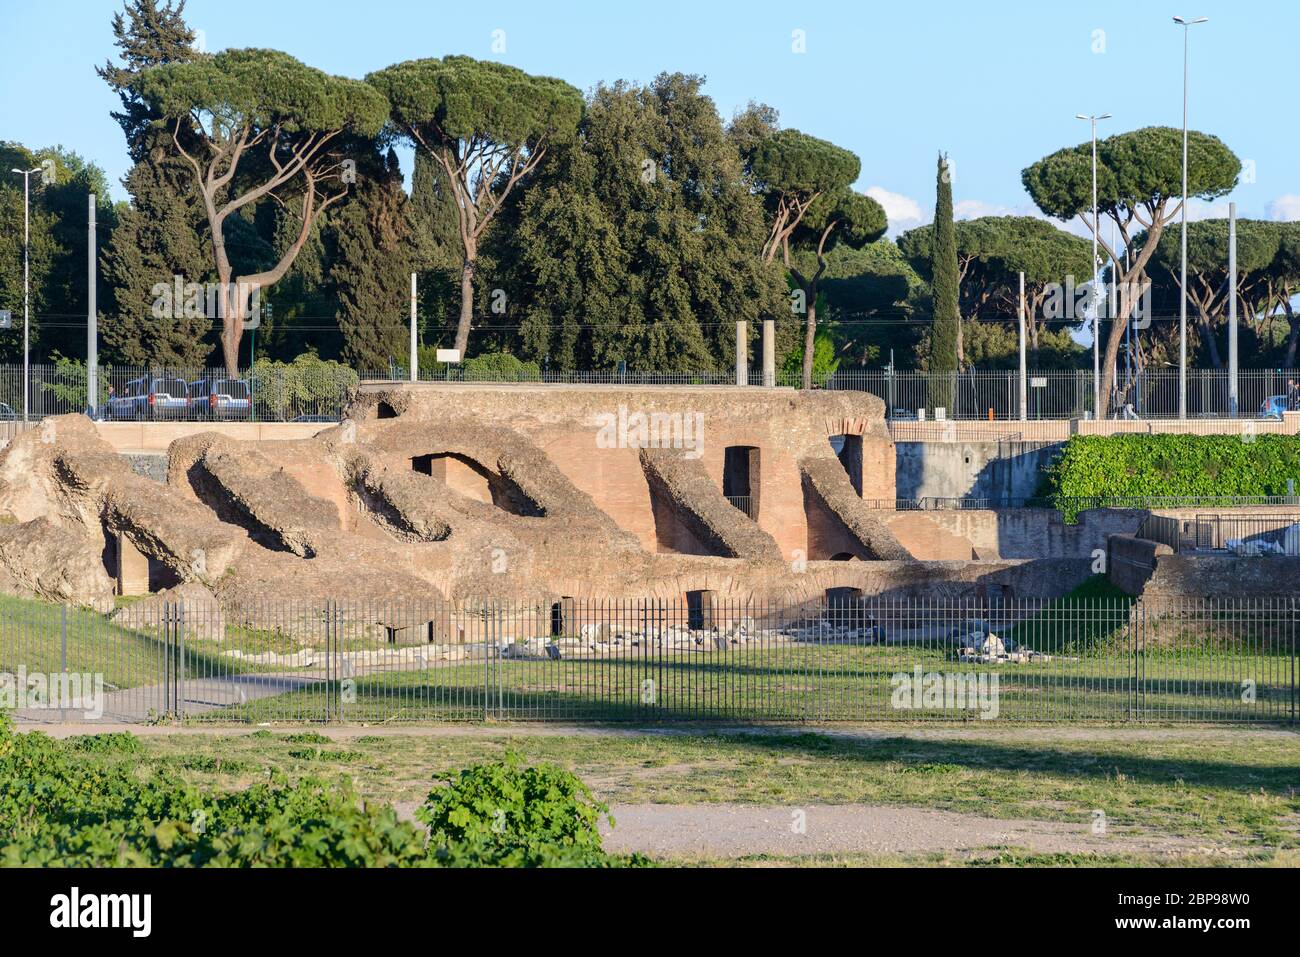 Le Cirque Maxime ruines, en italien Circo Massimo, ancienne capitale romaine, les courses de chars stadium et lieu de divertissement de masse situé à Rome, Italie Banque D'Images